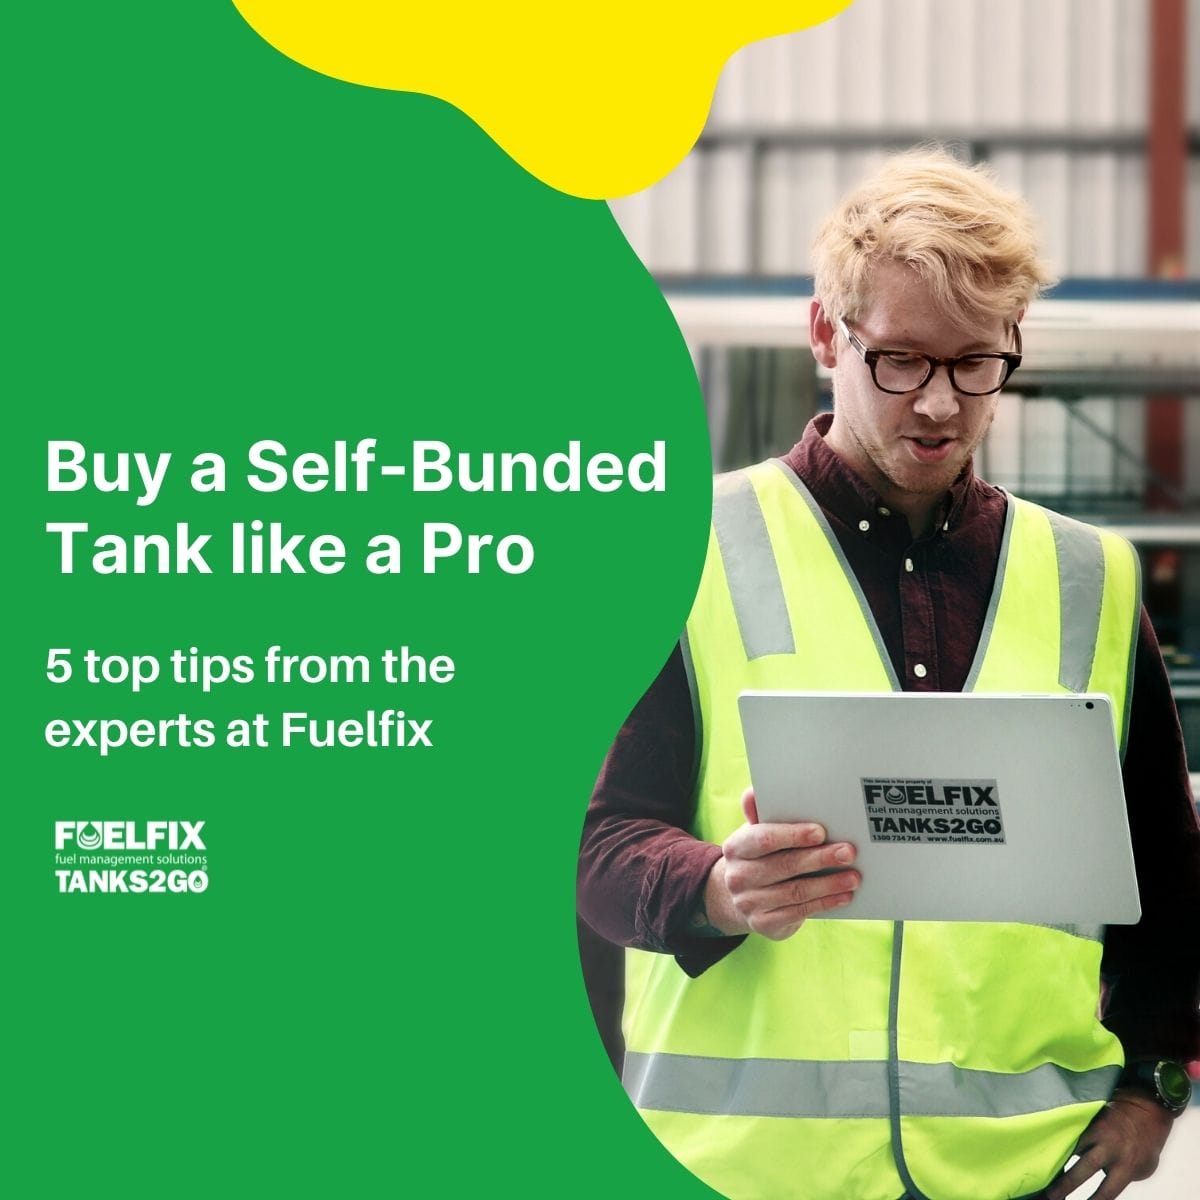 Buy a Self-Bunded Tank like a Pro